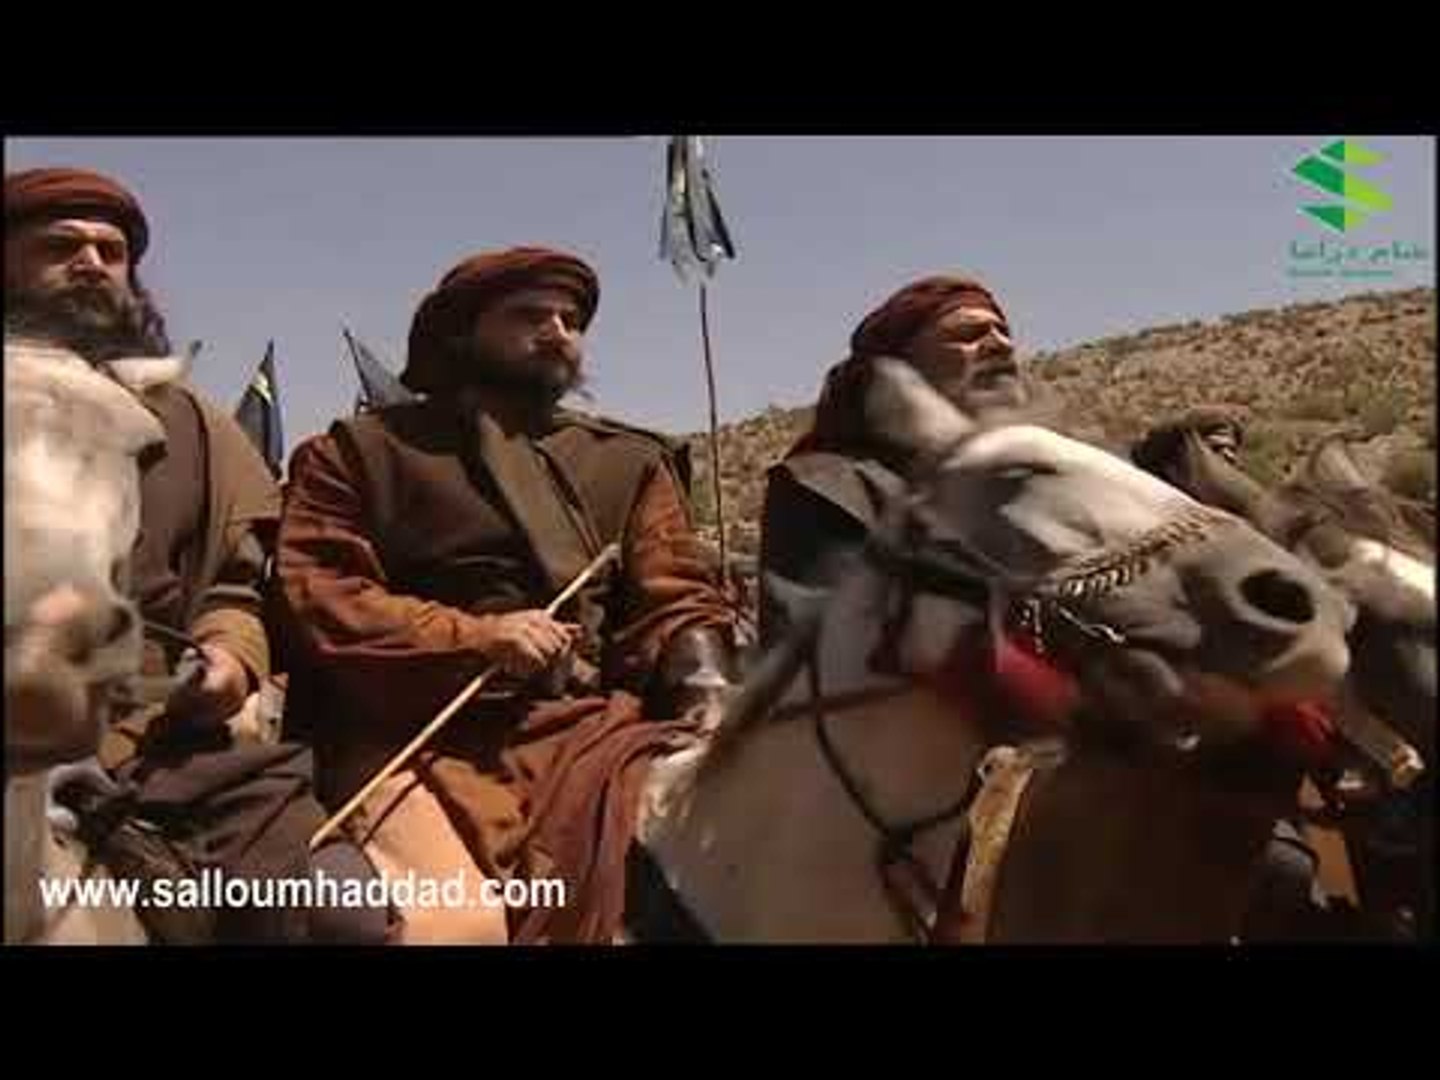 الزير سالم ـ معركة سالم مع قبيلة همام ـ سوم حداد ـ قصي خولي mp4 - فيديو  Dailymotion